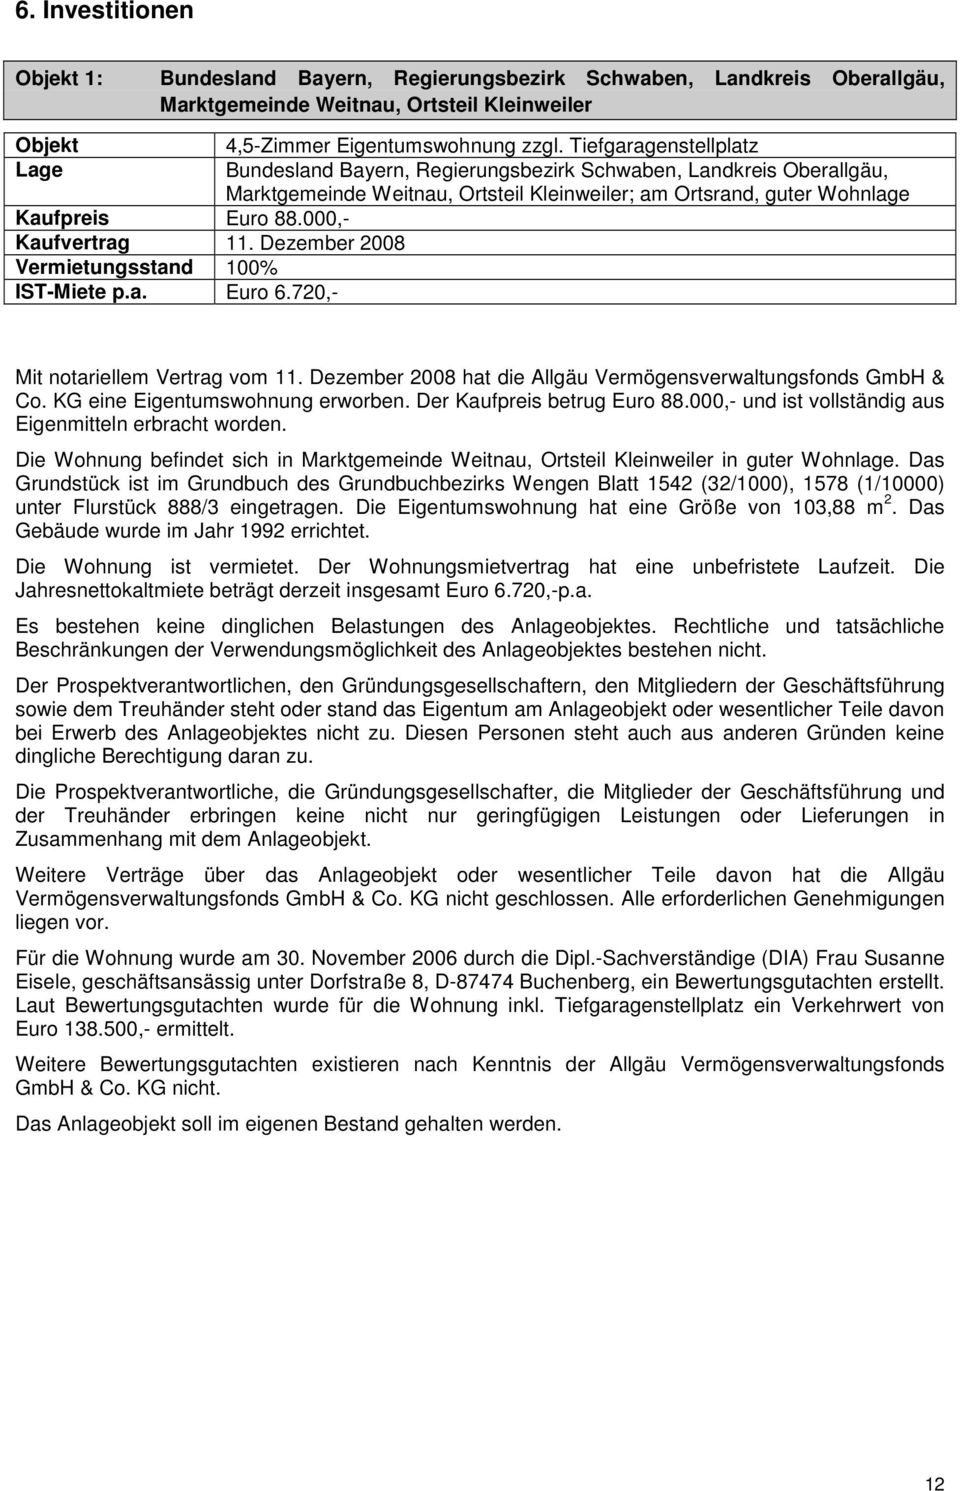 000,- Kaufvertrag 11. Dezember 2008 Vermietungsstand 100% IST-Miete p.a. Euro 6.720,- Mit notariellem Vertrag vom 11. Dezember 2008 hat die Allgäu Vermögensverwaltungsfonds GmbH & Co.